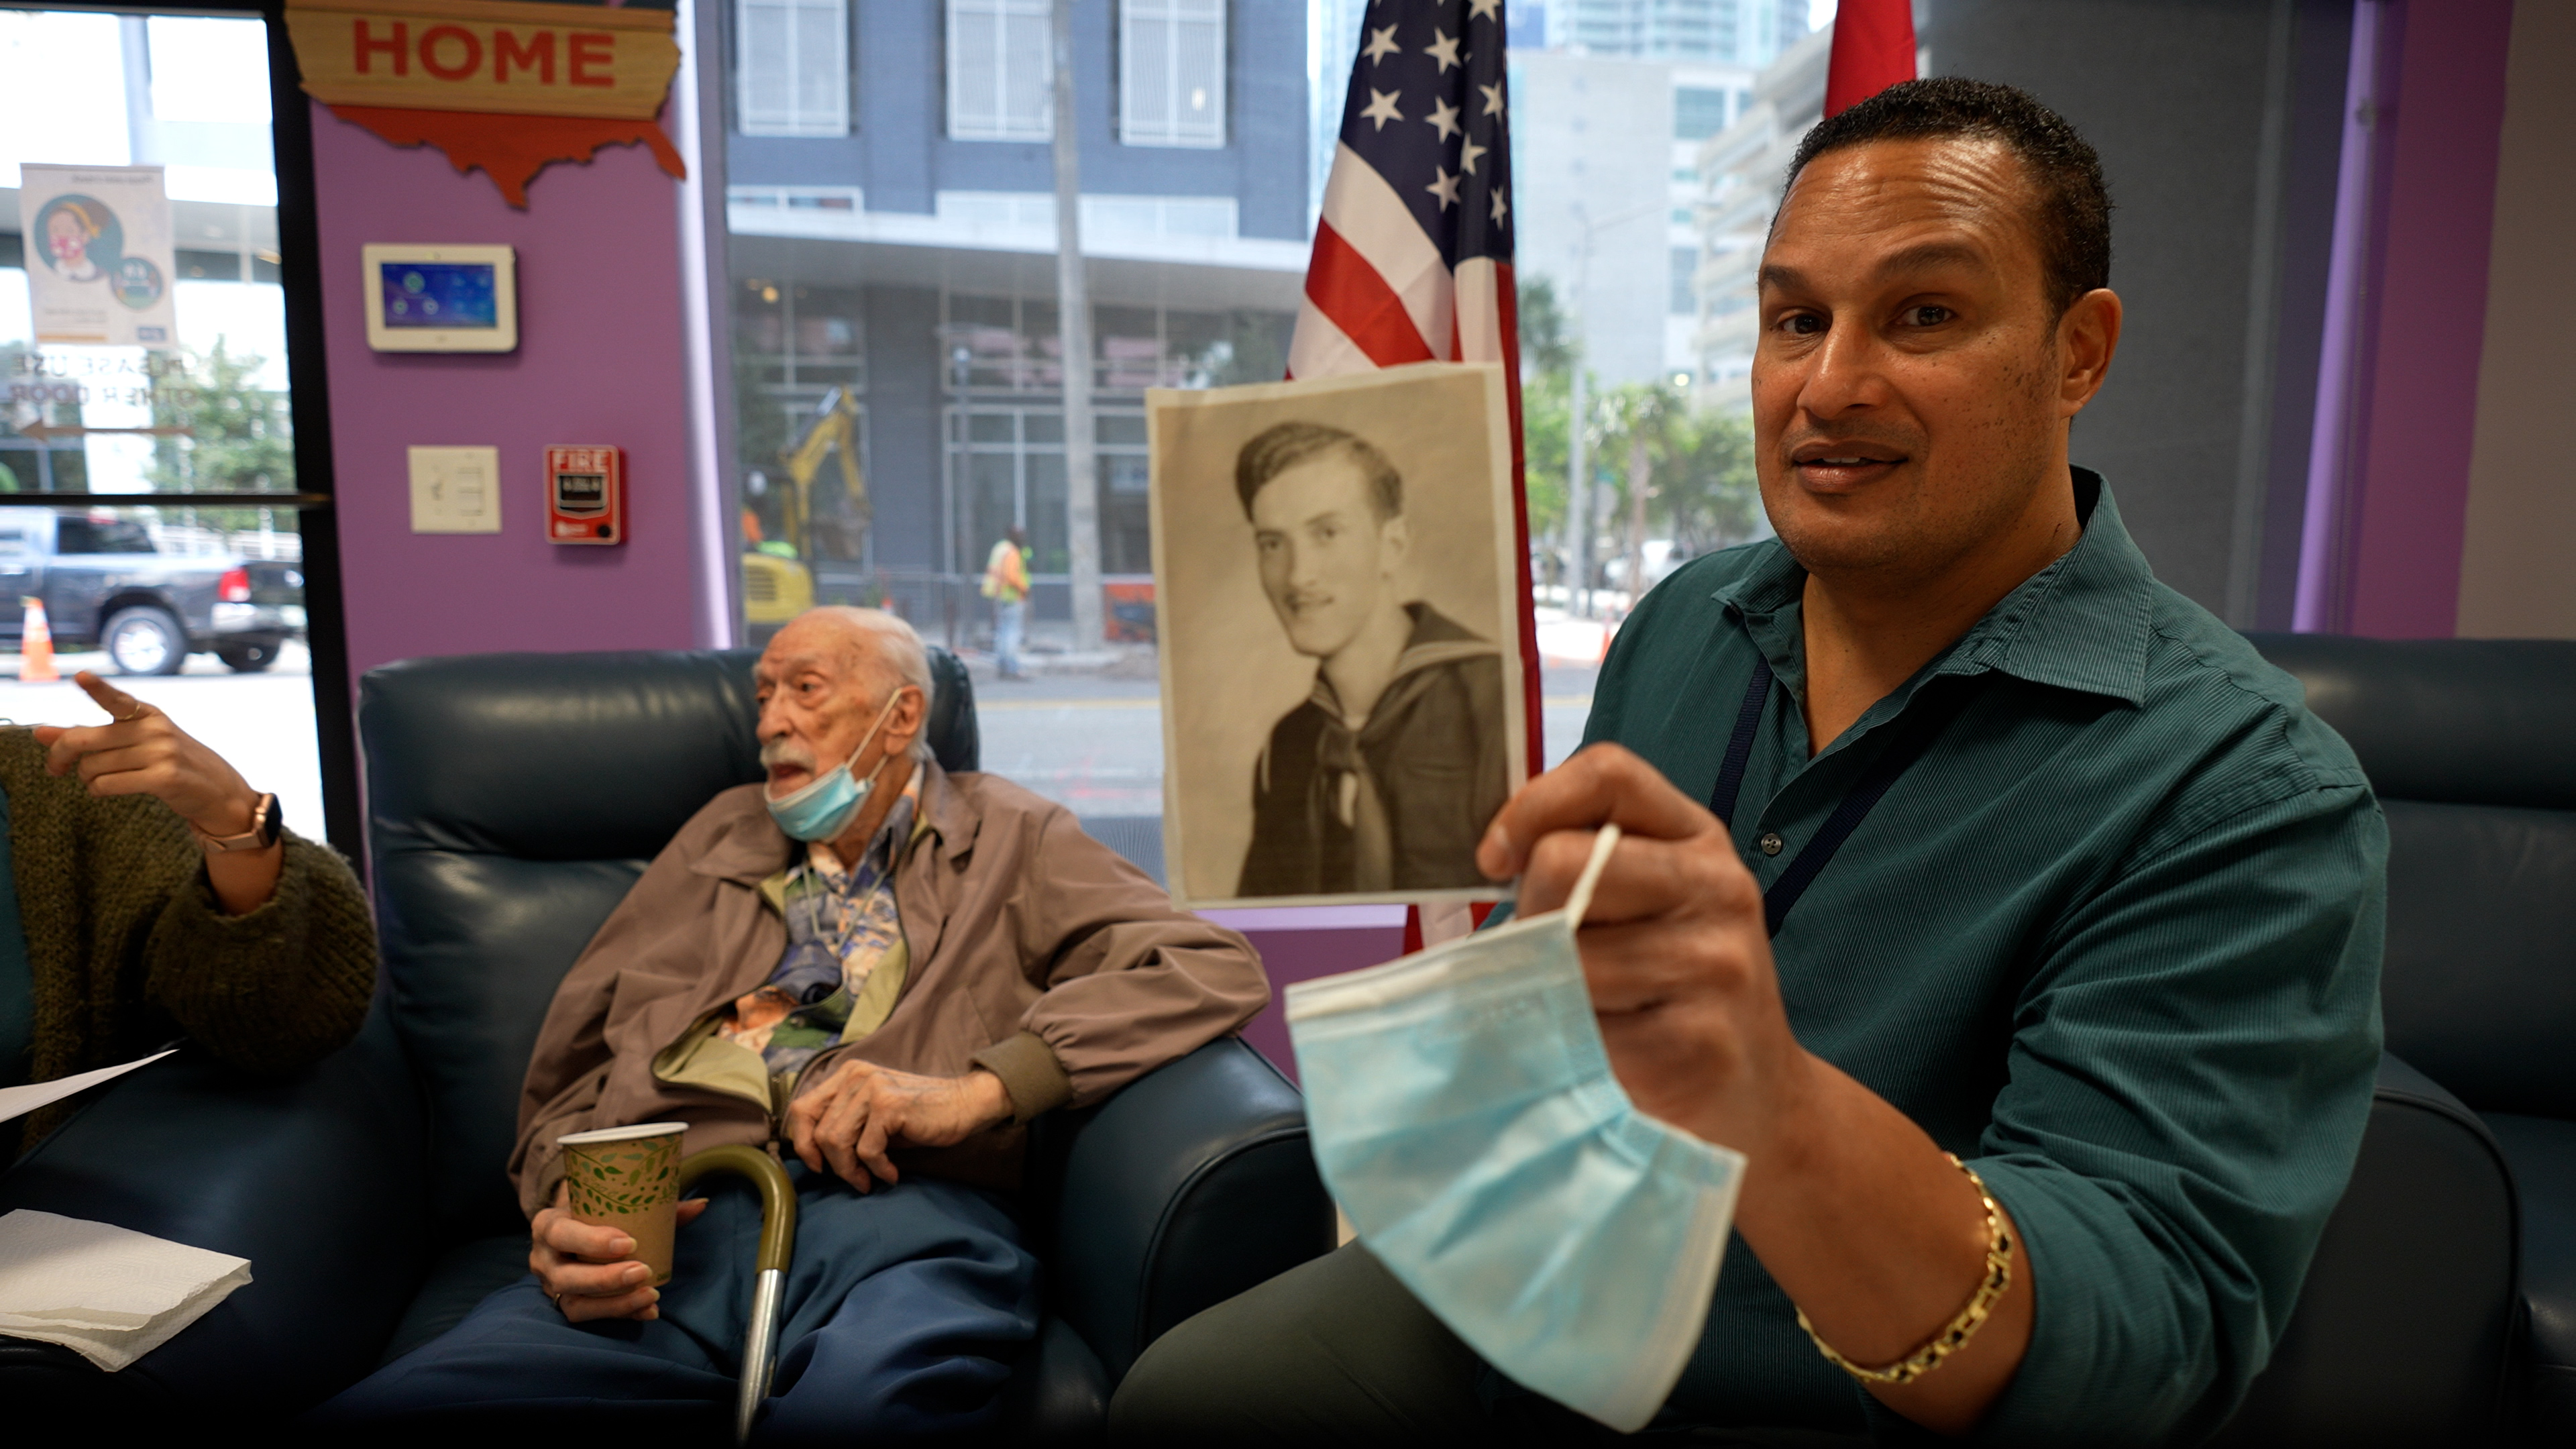 World War II Veteran Facing Eviction Gets Help